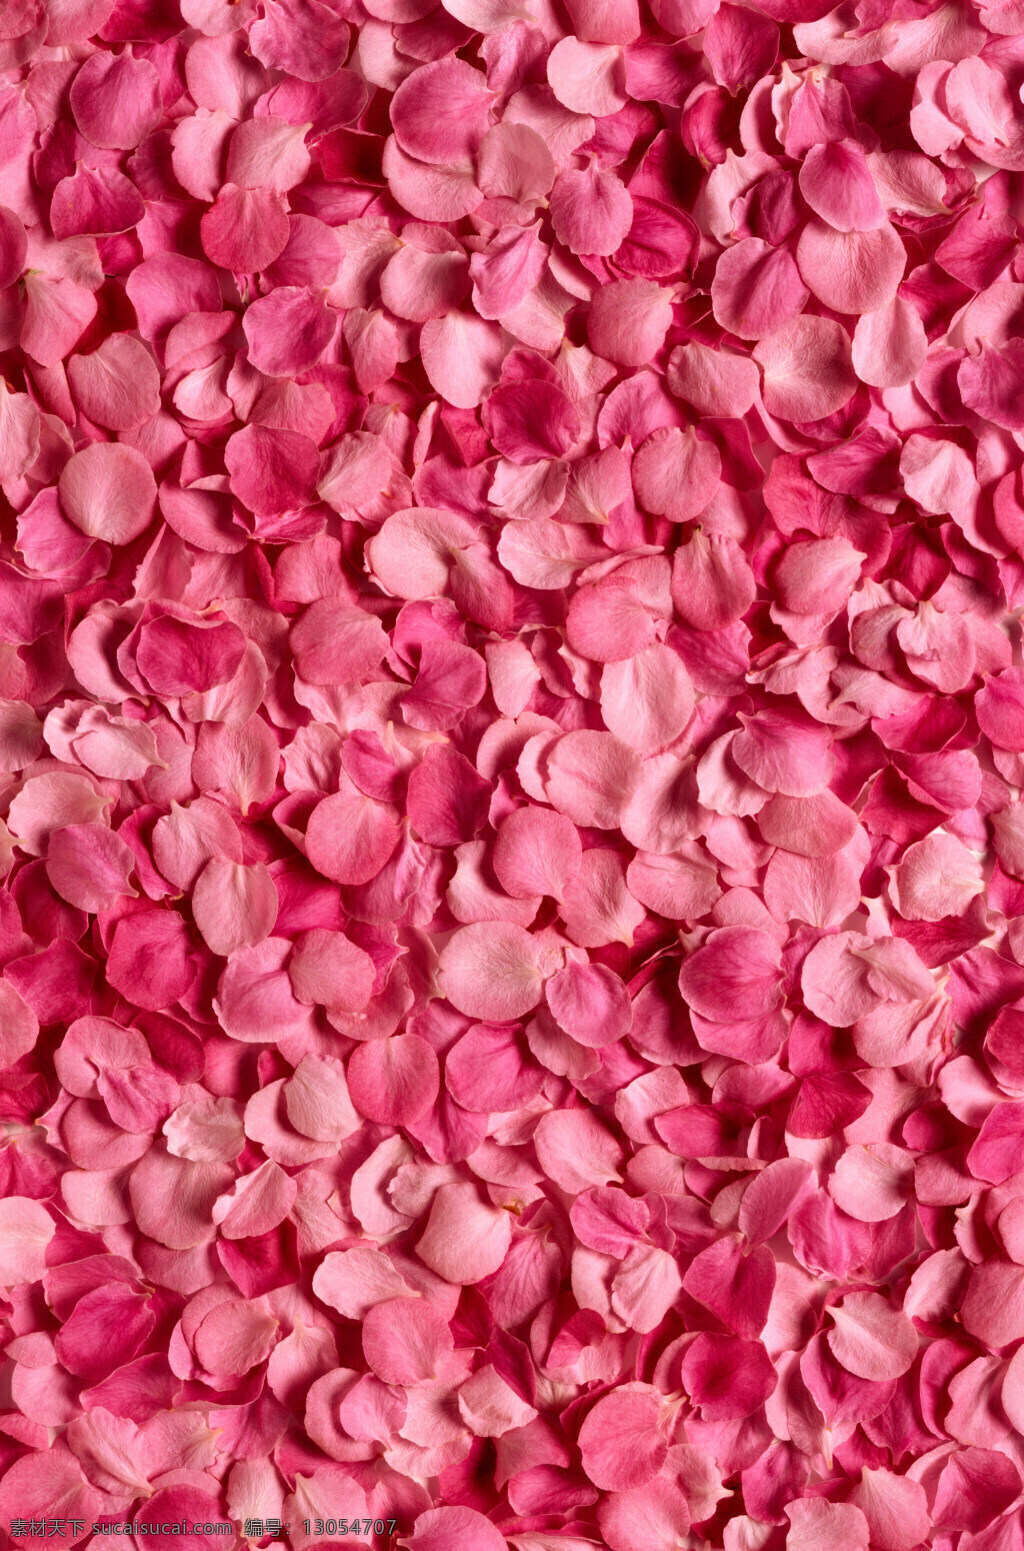 粉红色 玫瑰 花瓣 背景 玫瑰花 花朵 精美图片 印刷适用